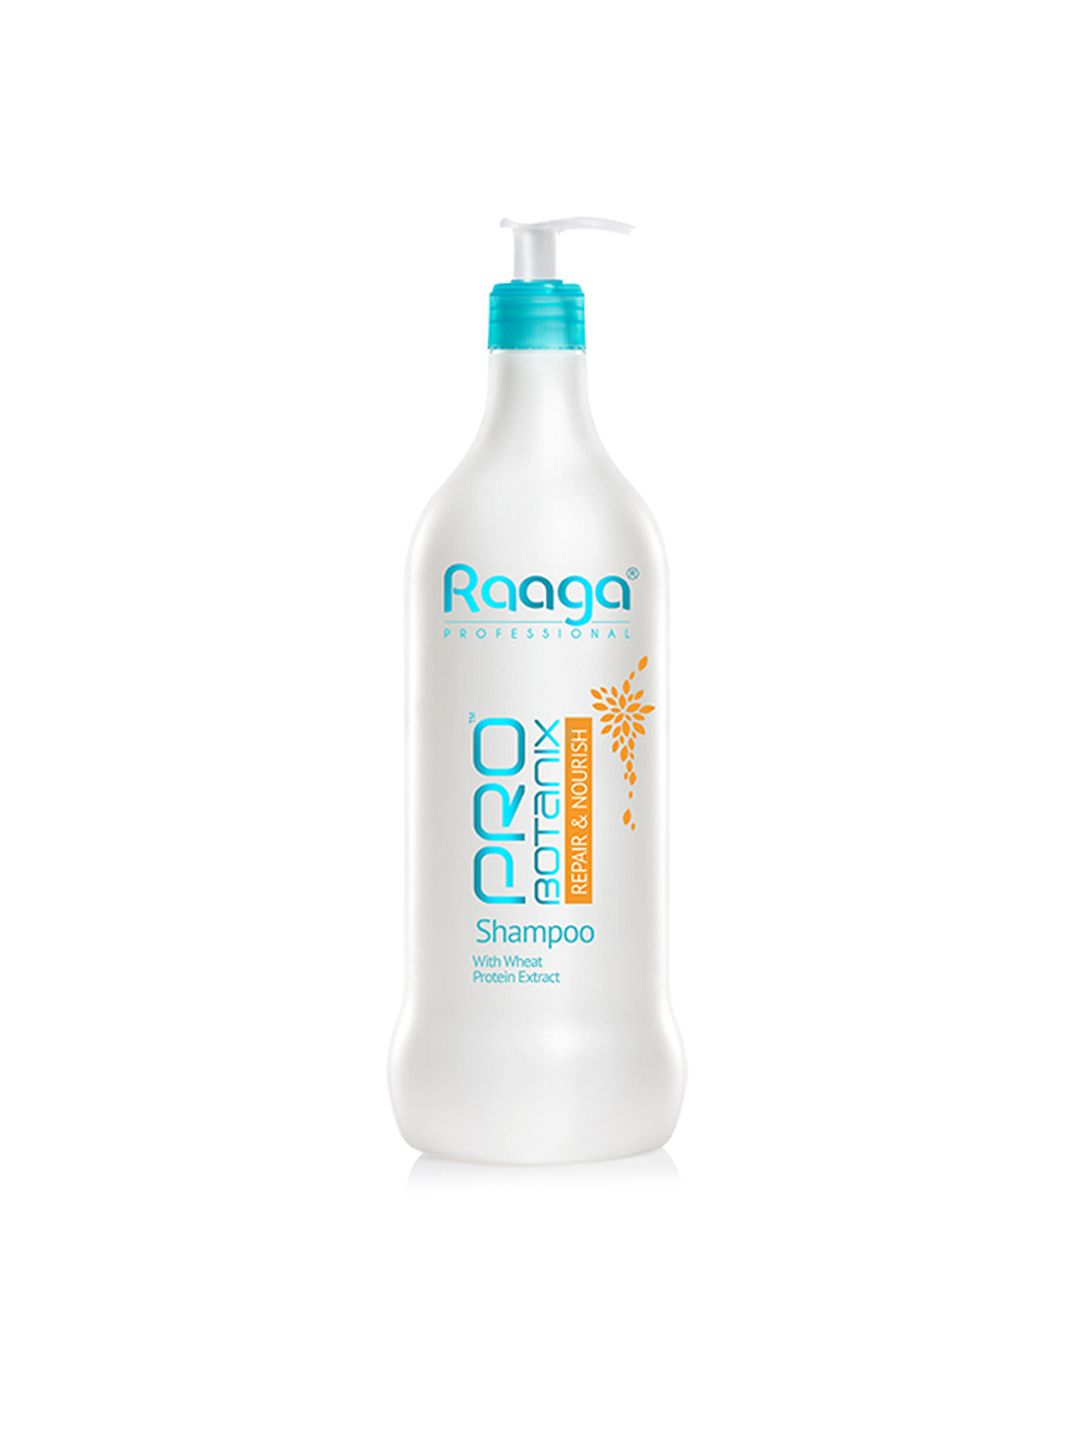 Raaga PROFESSIONAL Probotanix Repair and Nourish Shampoo 1L Price in India